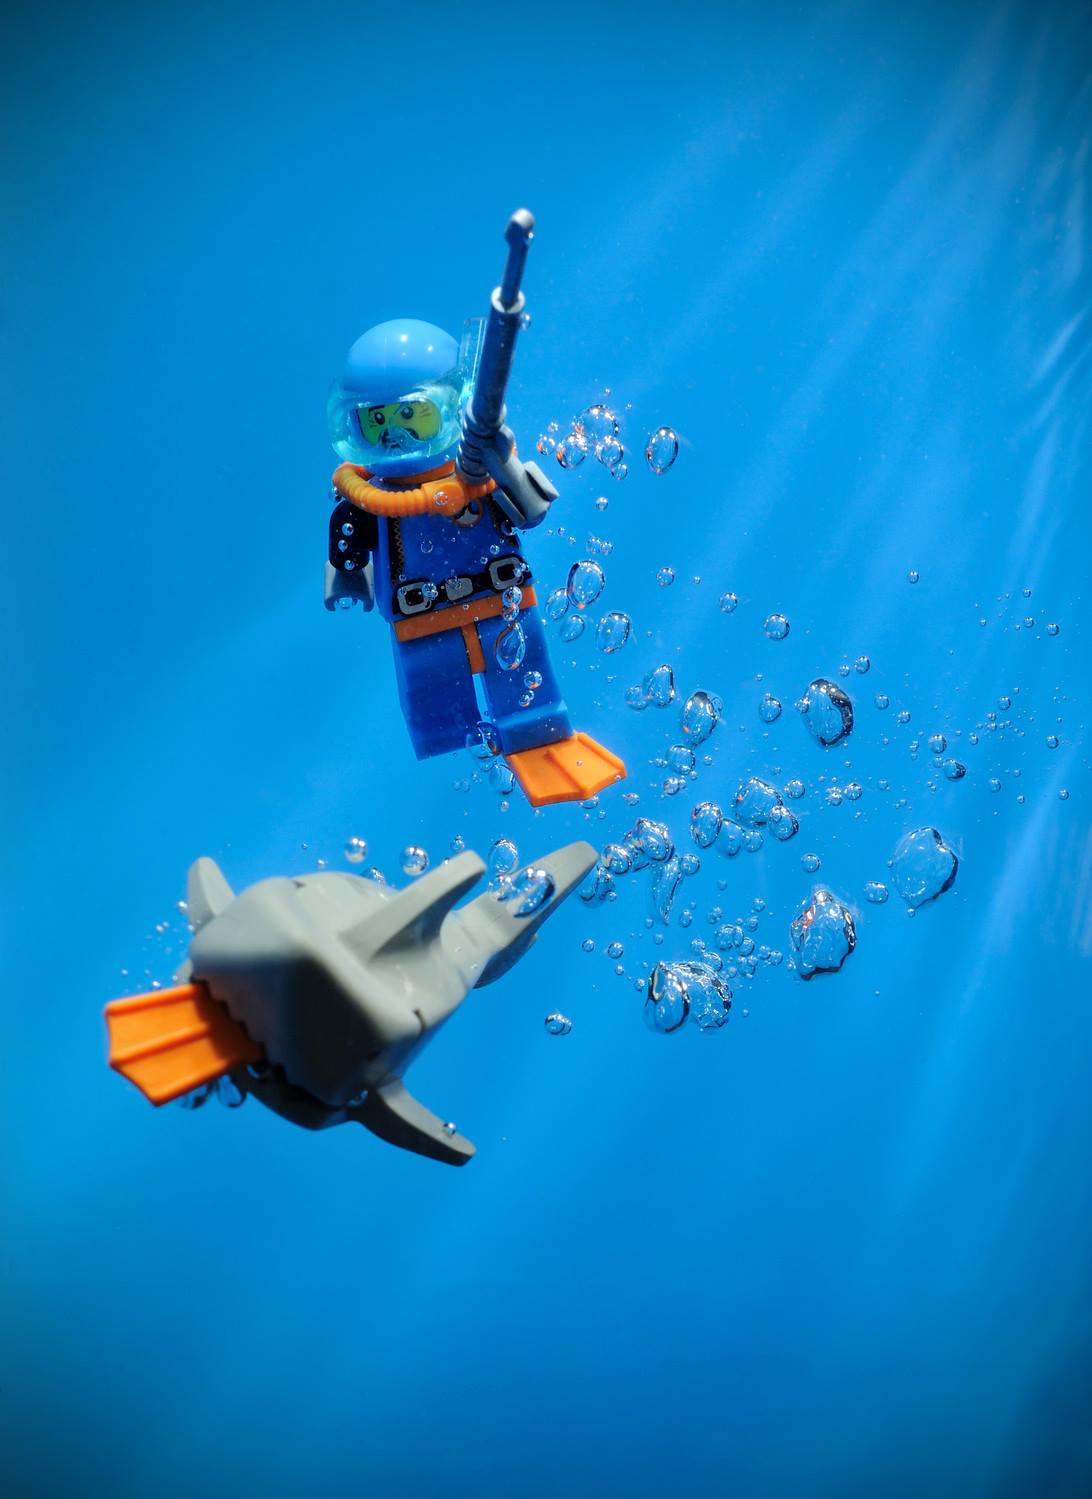 Il utilise des LEGO pour creer des scènes 100% geek